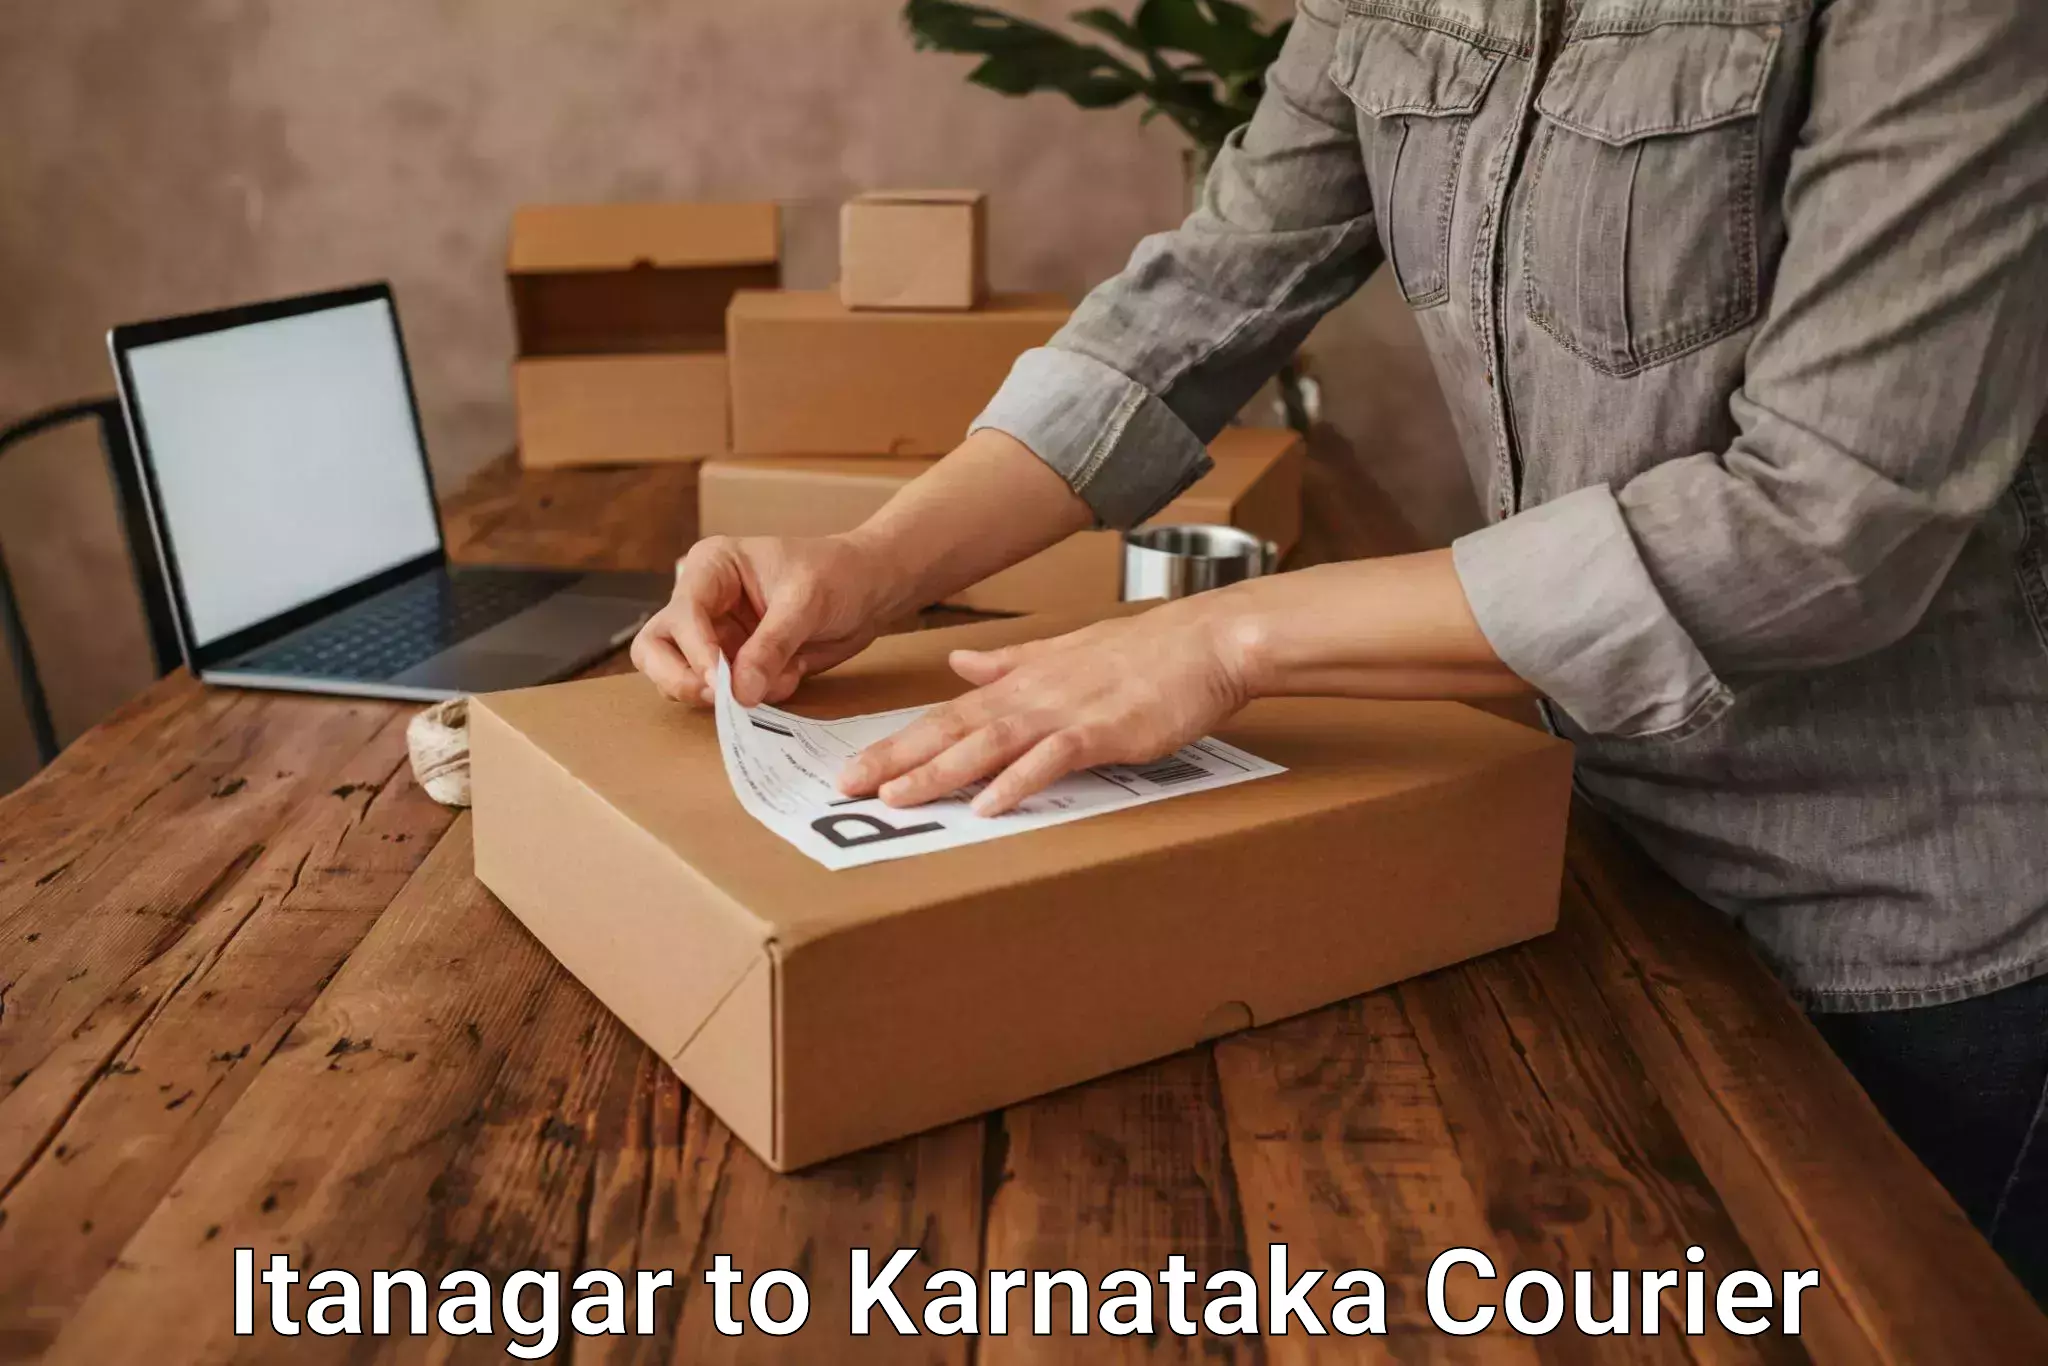 Premium courier services Itanagar to Sringeri